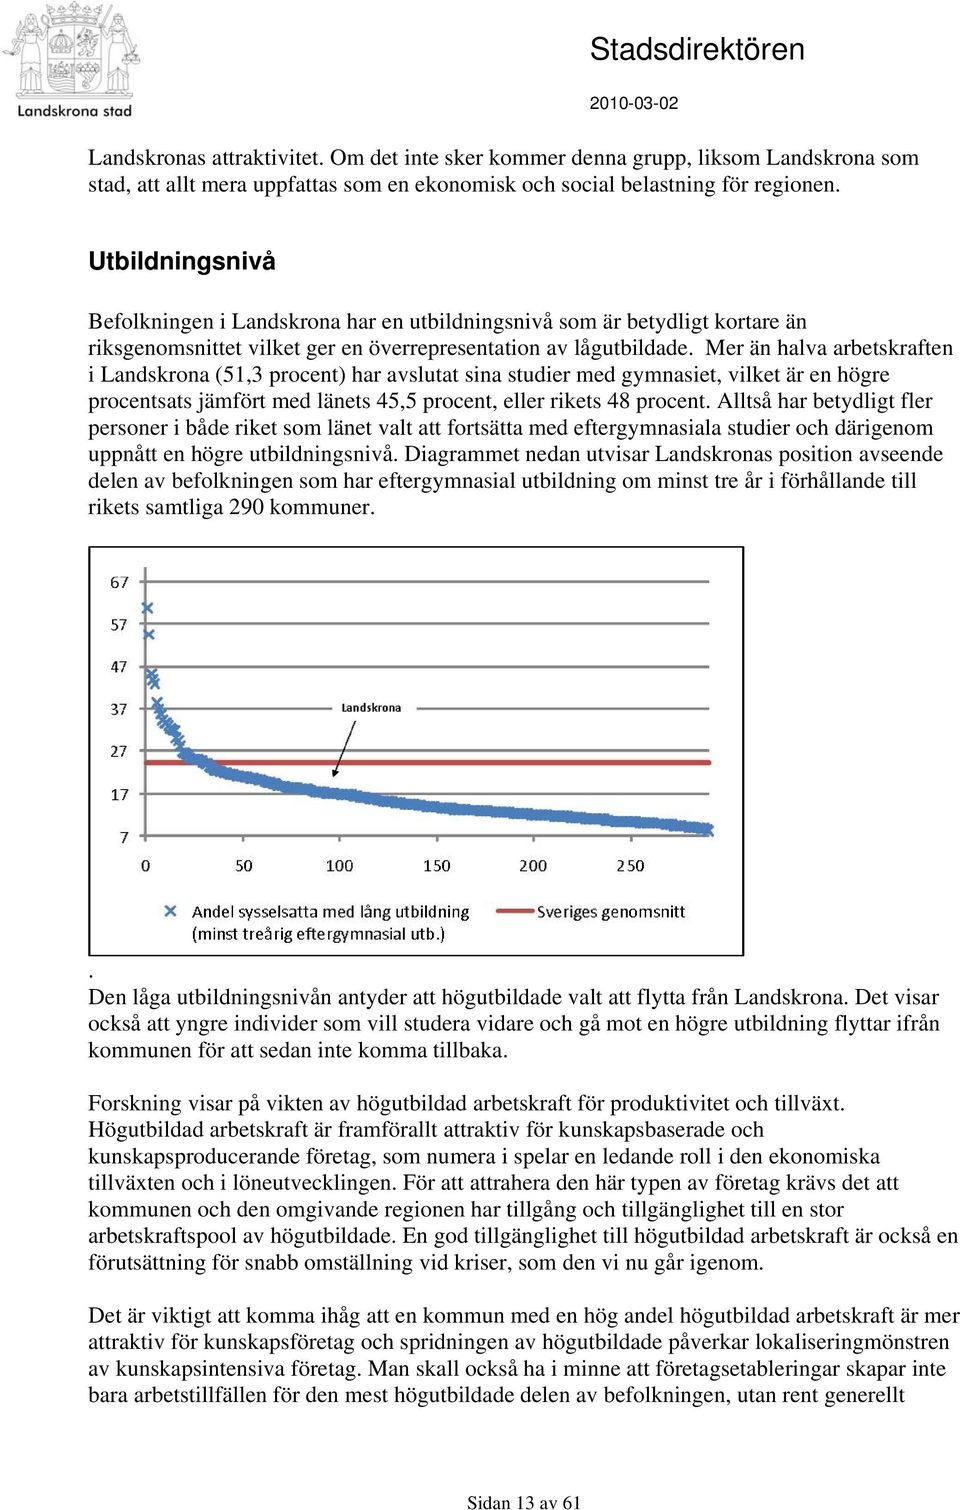 Mer än halva arbetskraften i Landskrona (51,3 procent) har avslutat sina studier med gymnasiet, vilket är en högre procentsats jämfört med länets 45,5 procent, eller rikets 48 procent.